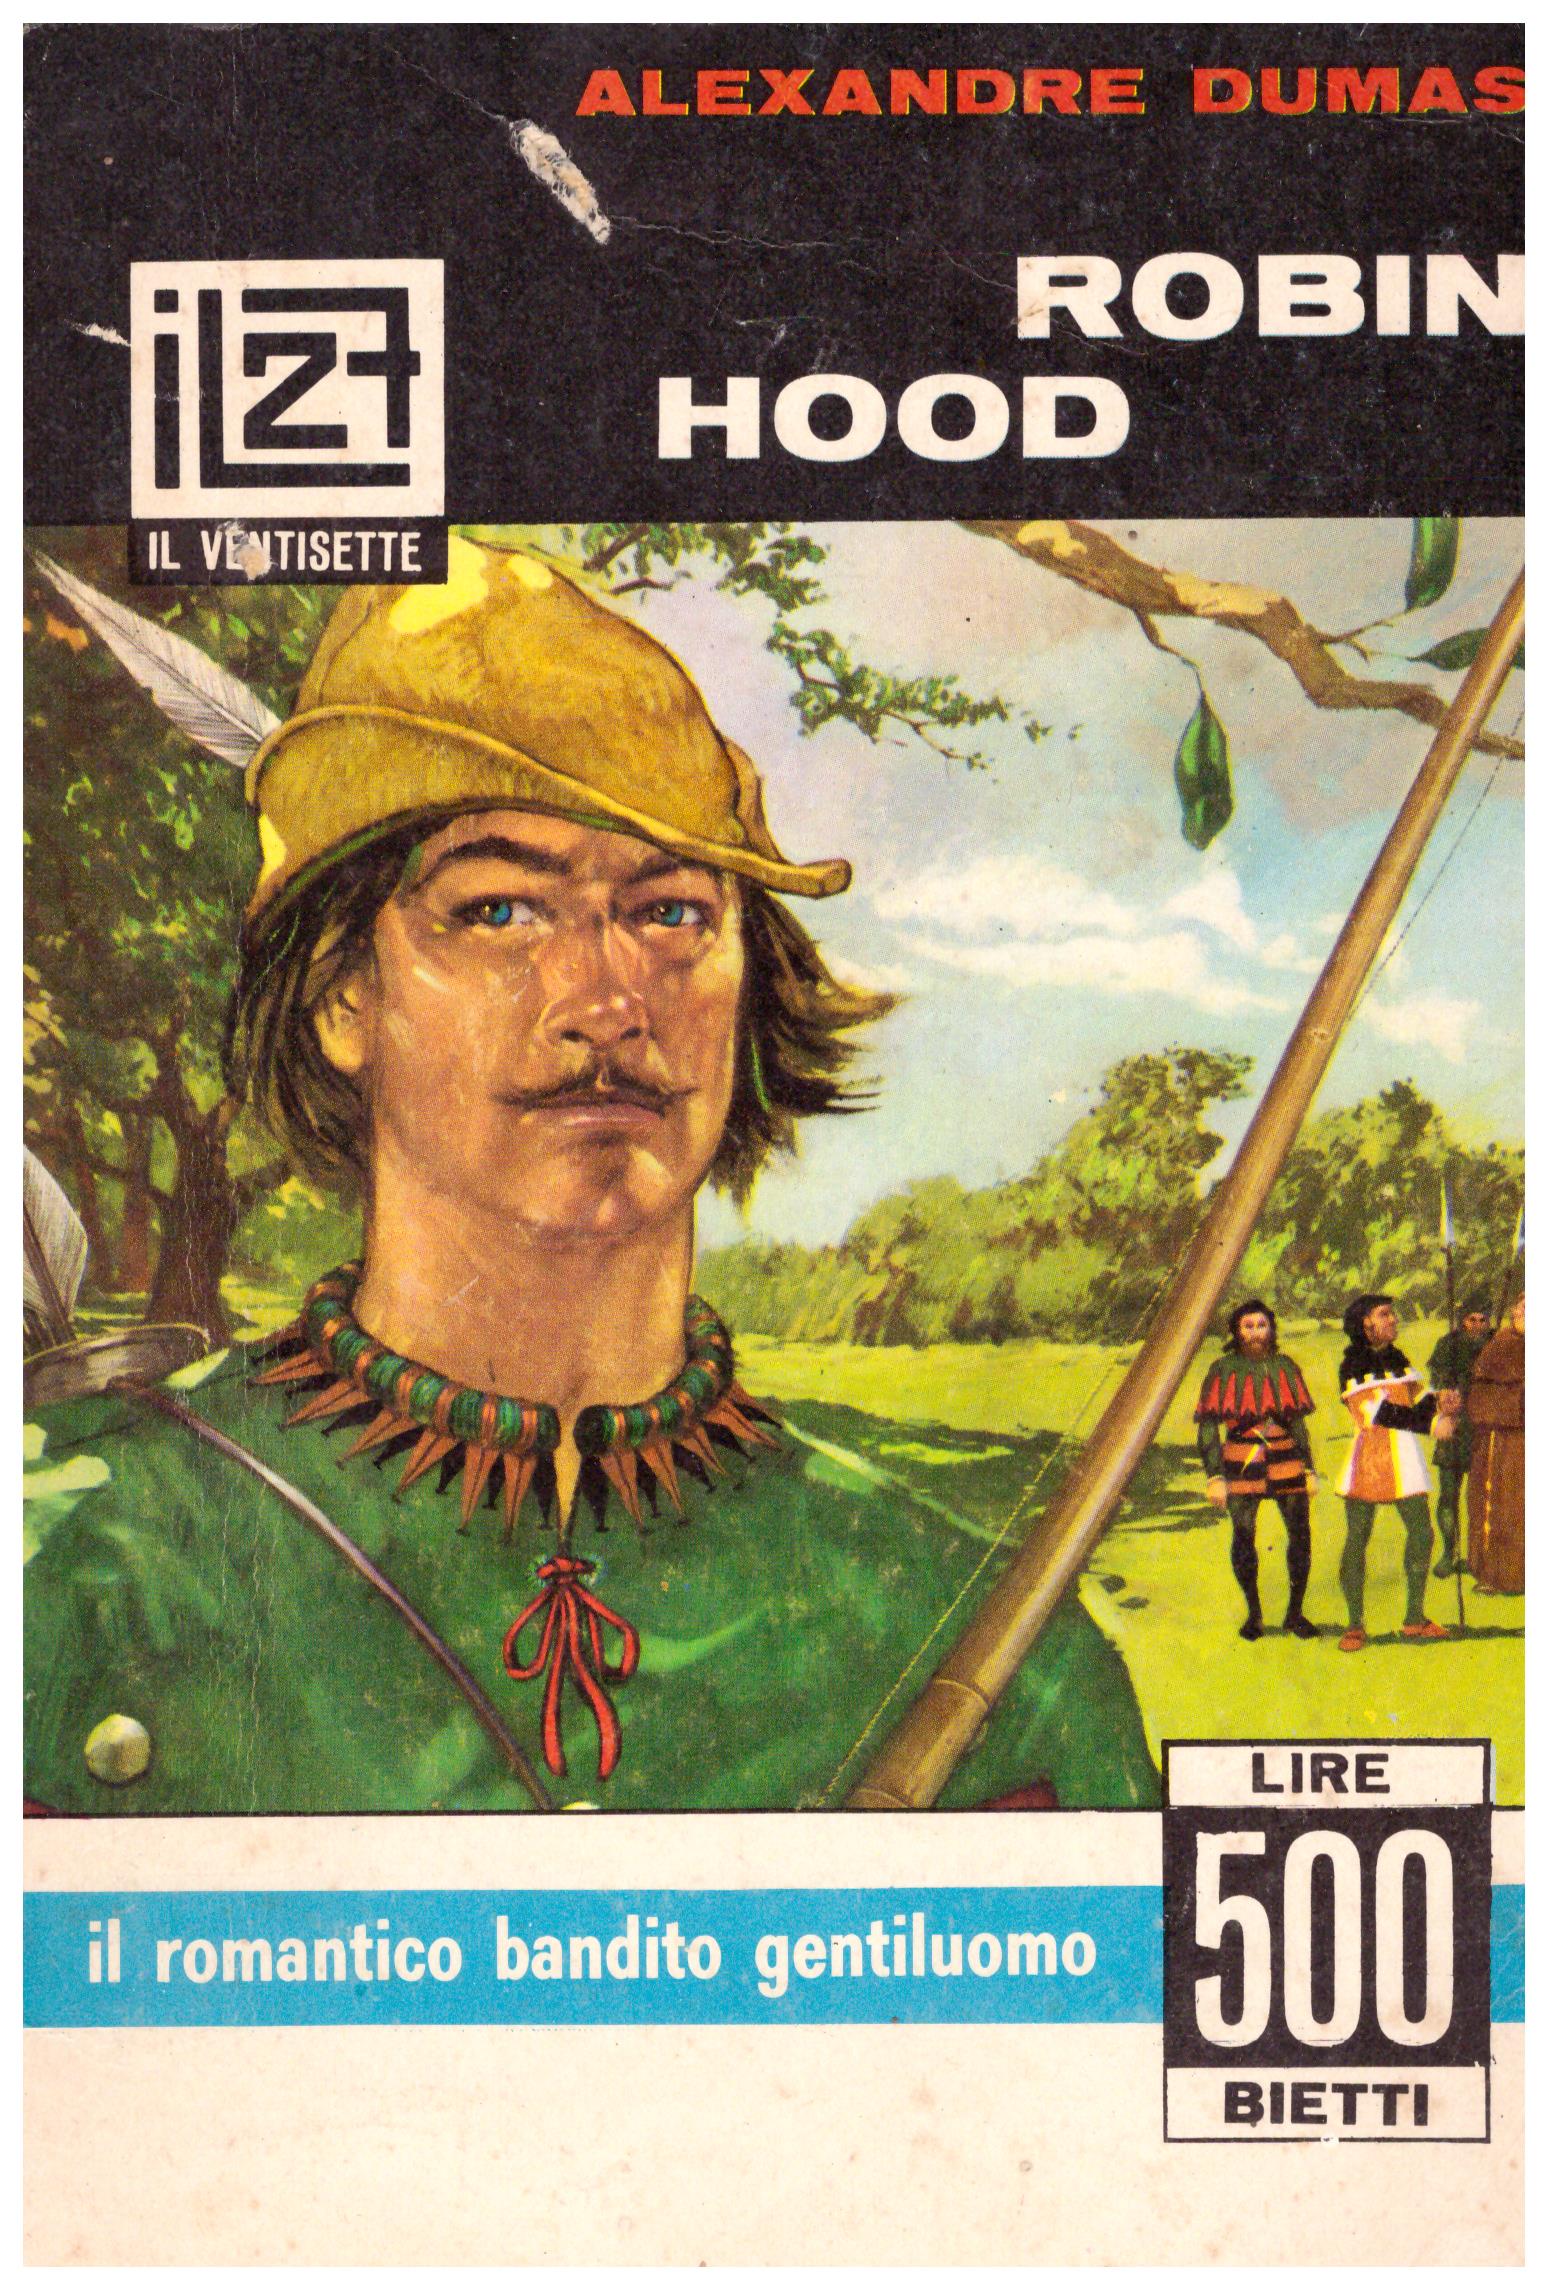 Titolo: Robin Hood Autore: Alexandre Dumas Editore: Bletti, Milano 1967